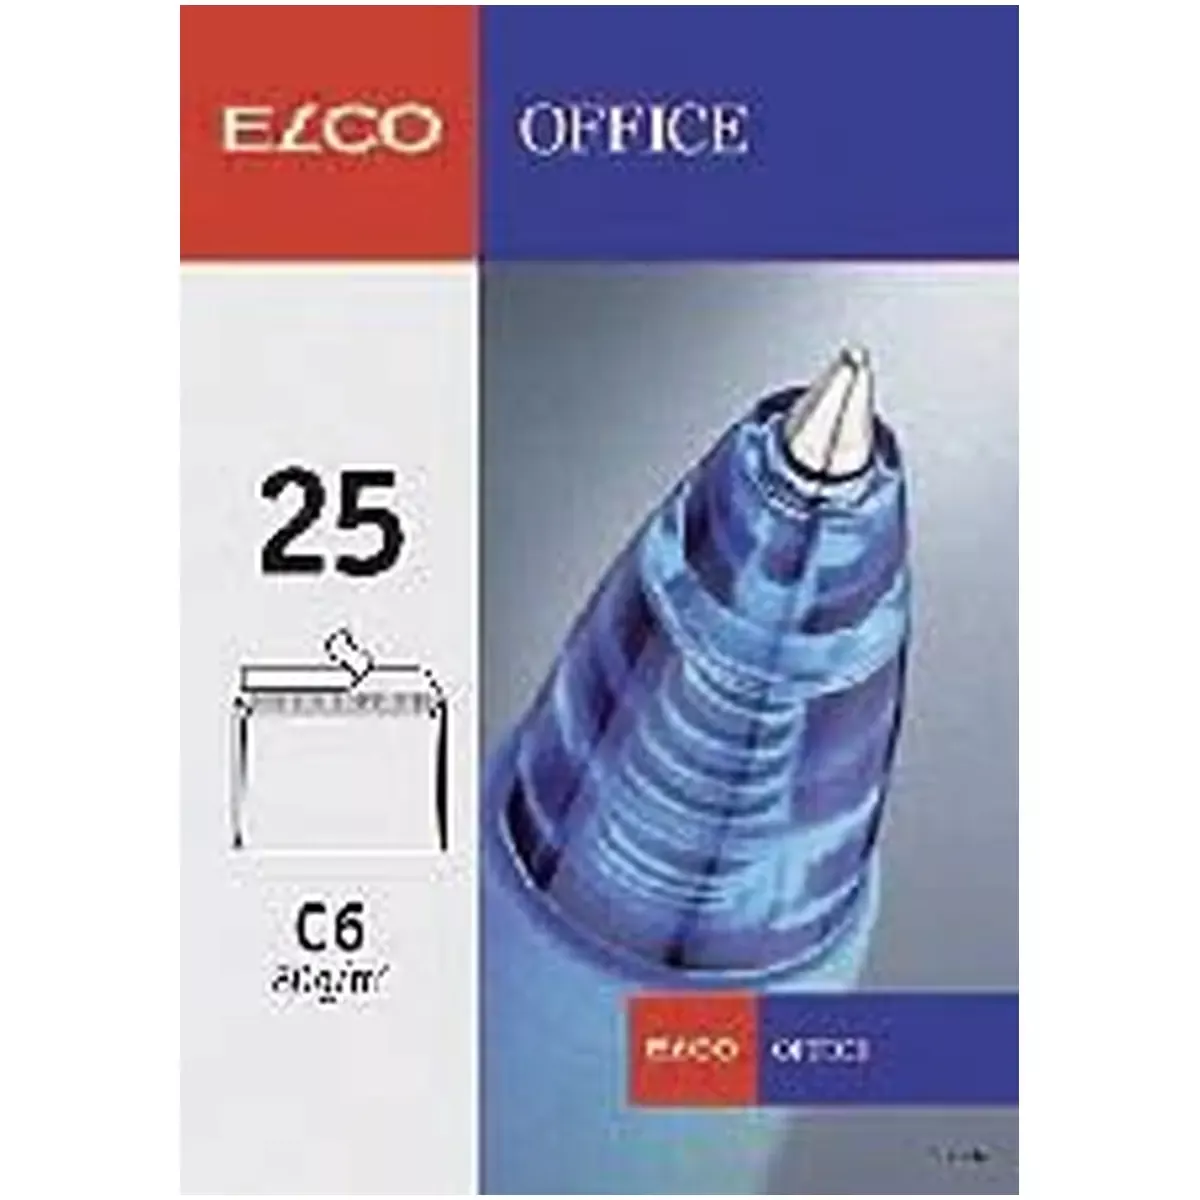 Büromaterial Briefumschlag Office - C4, hochweiß, haftklebend, 120 g qm, 10 Stück für Bürobedarf